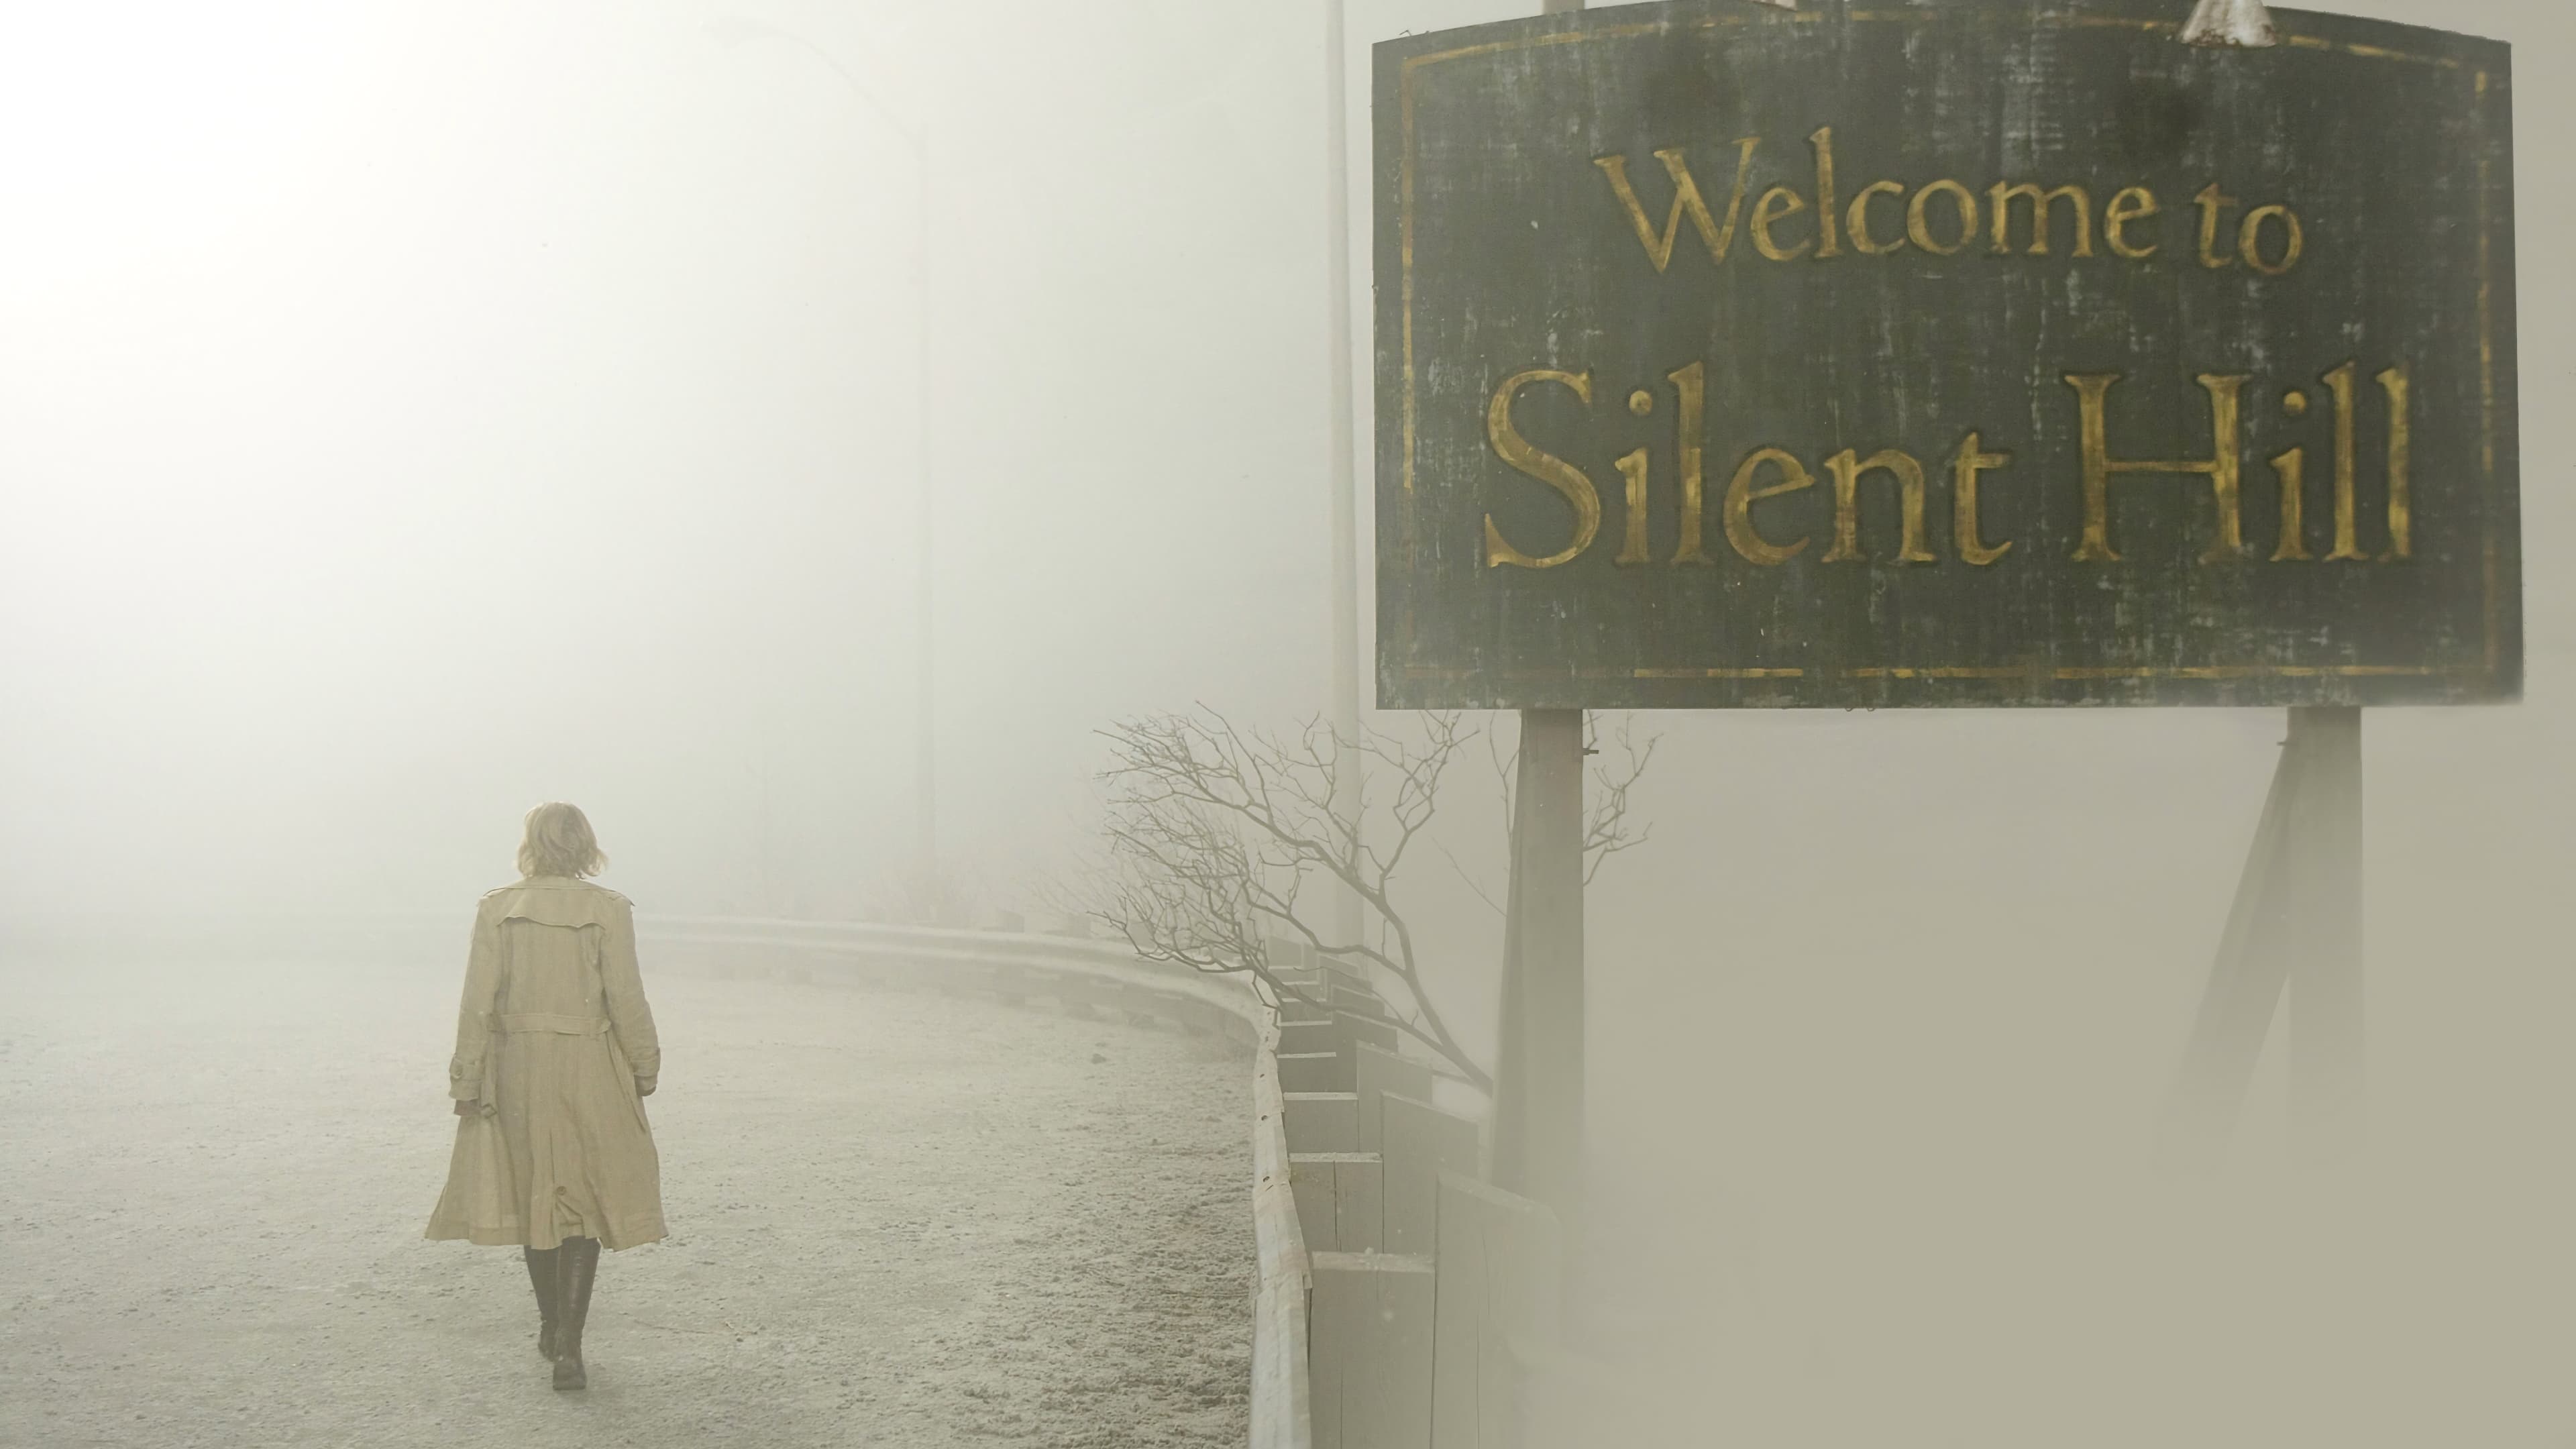 Silent Hill (2006)